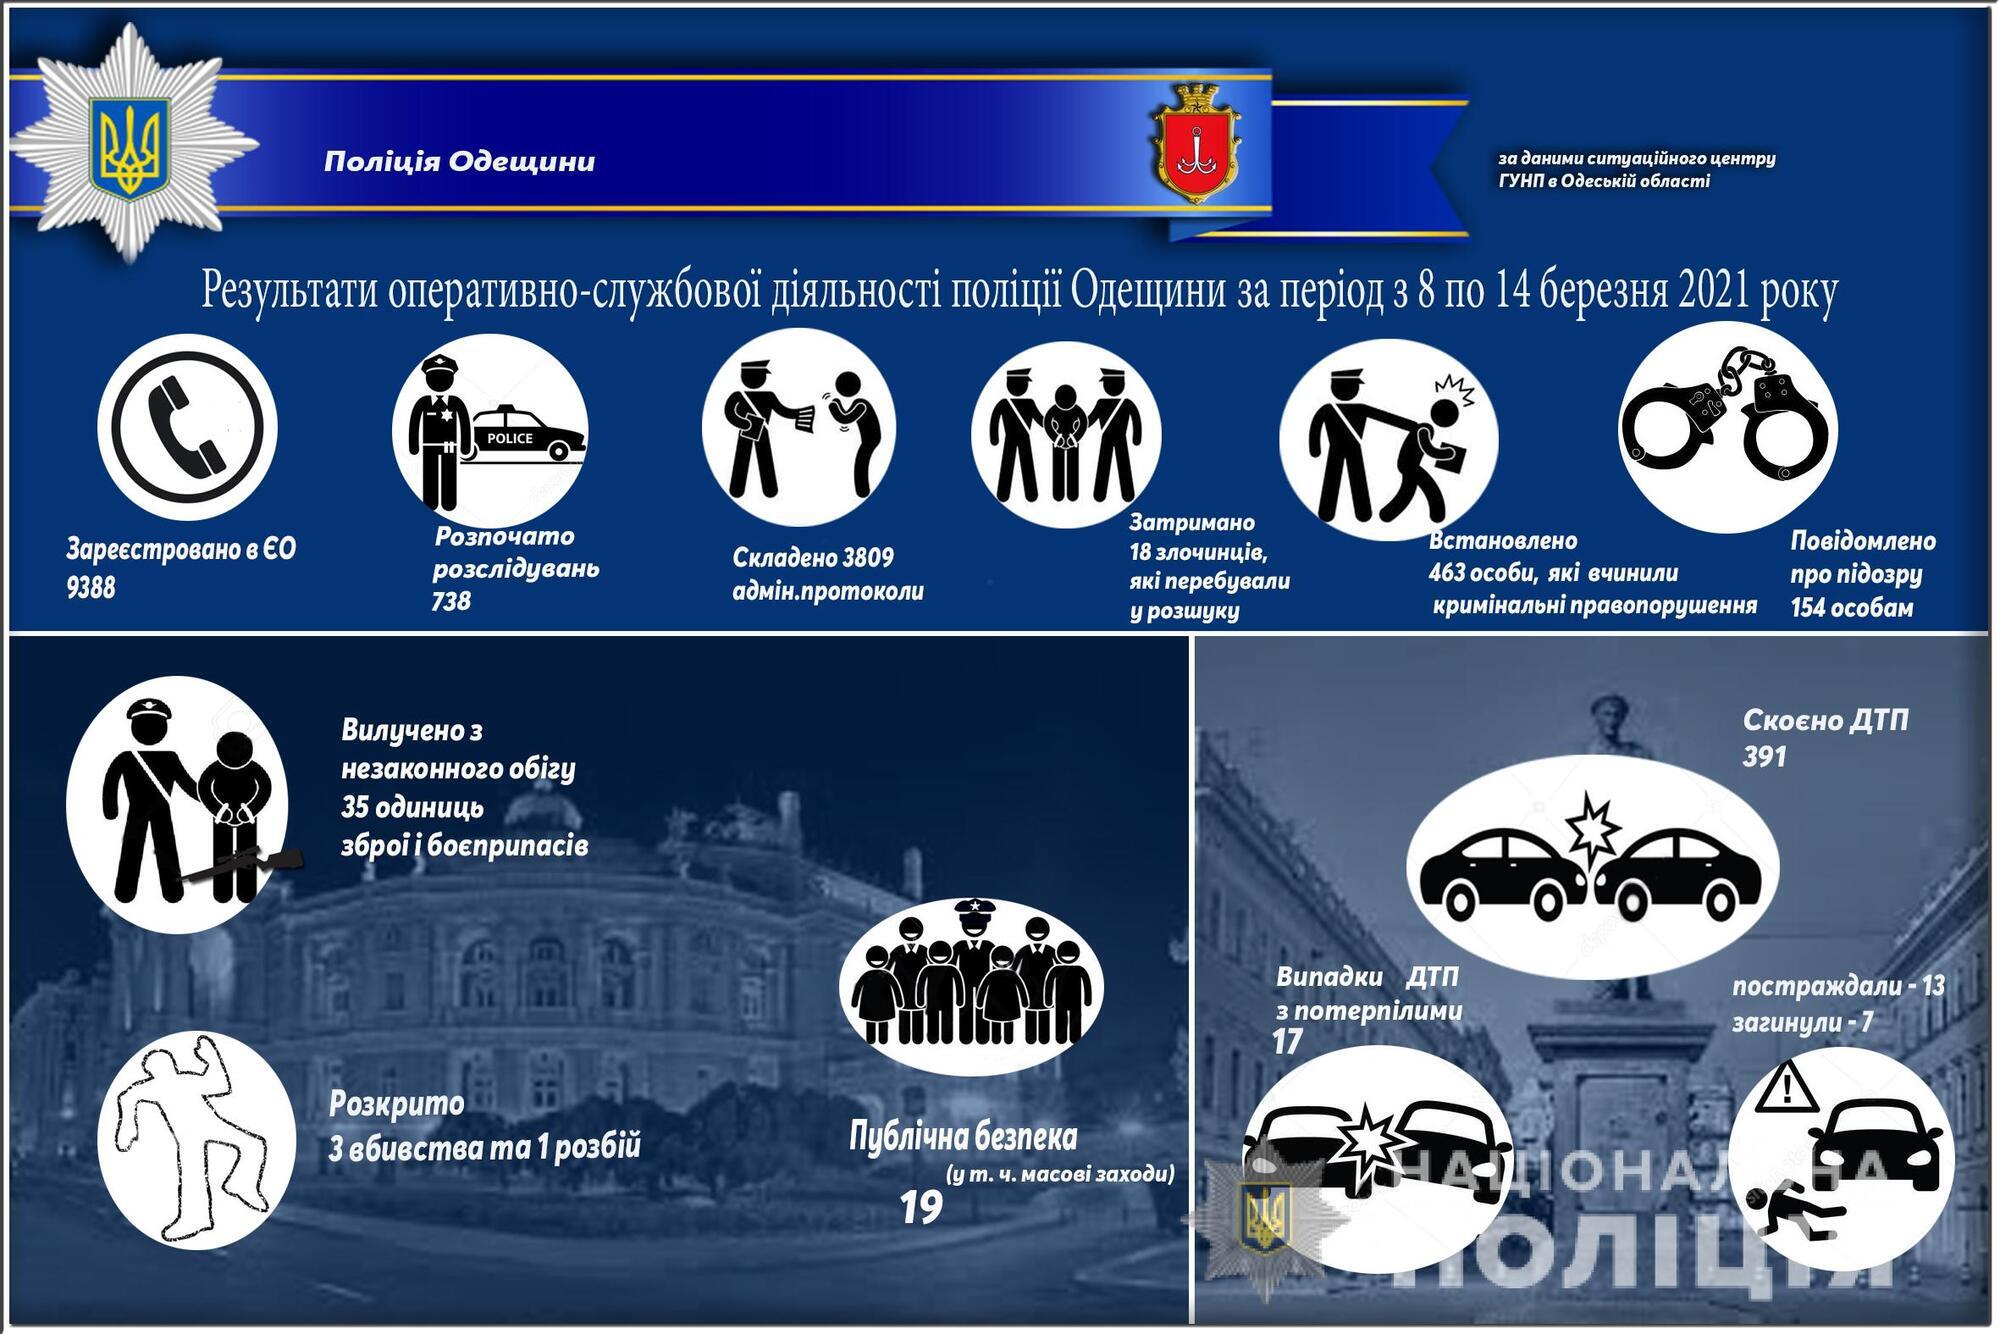 Результати оперативно-службової діяльності поліції Одещини за період з 8 по 14 березня 2021 року